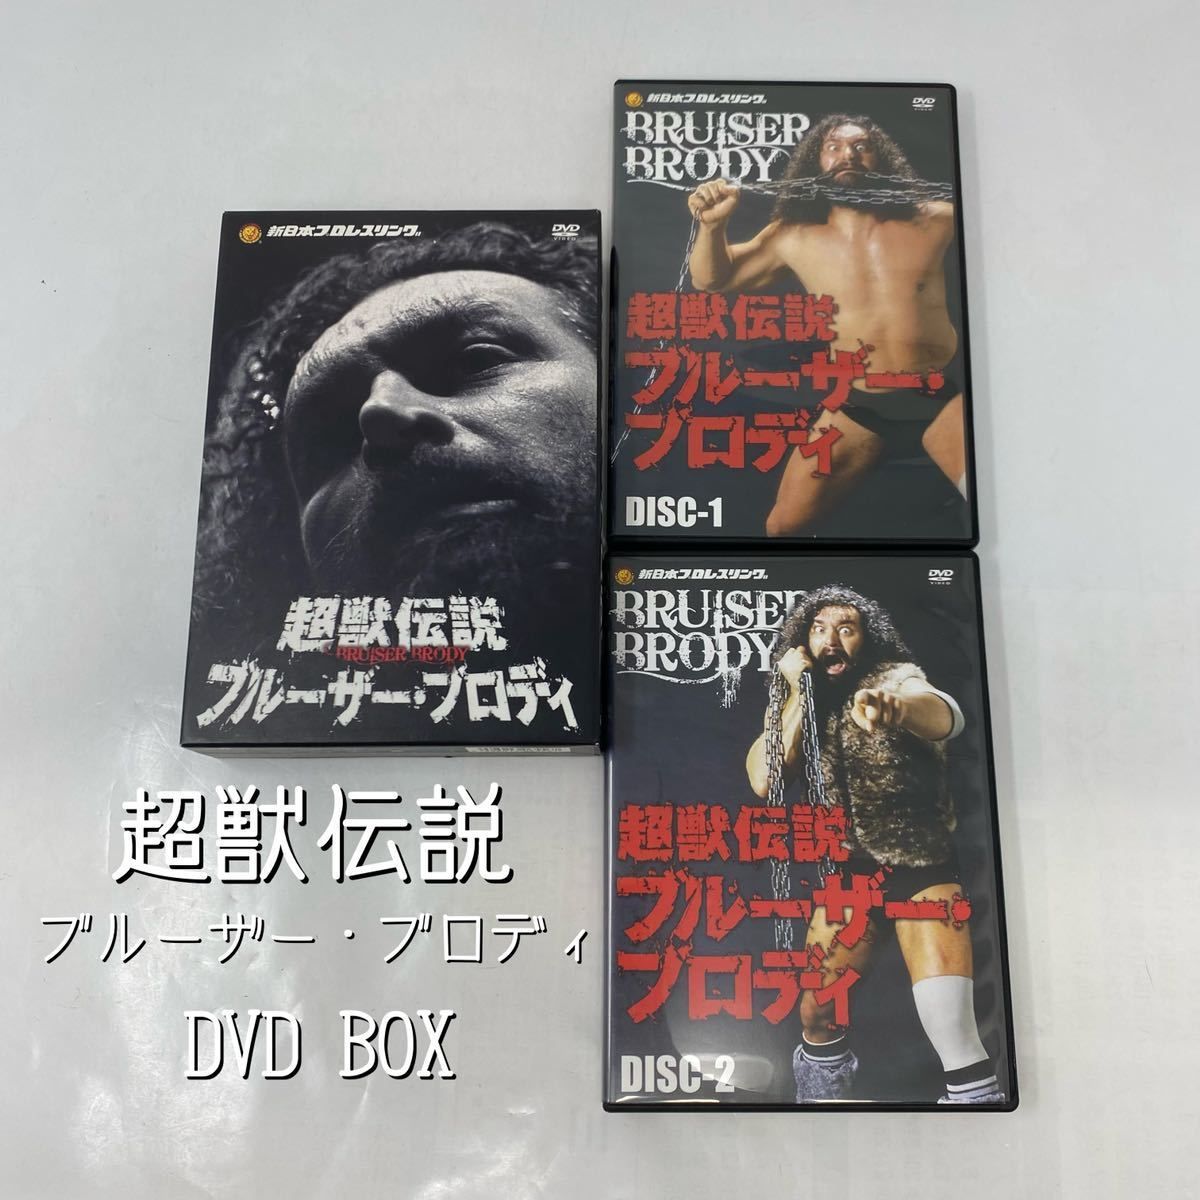 ブルーザー・ブロディ/新日本プロレスリング 最強外国人シリーズ 超獣 